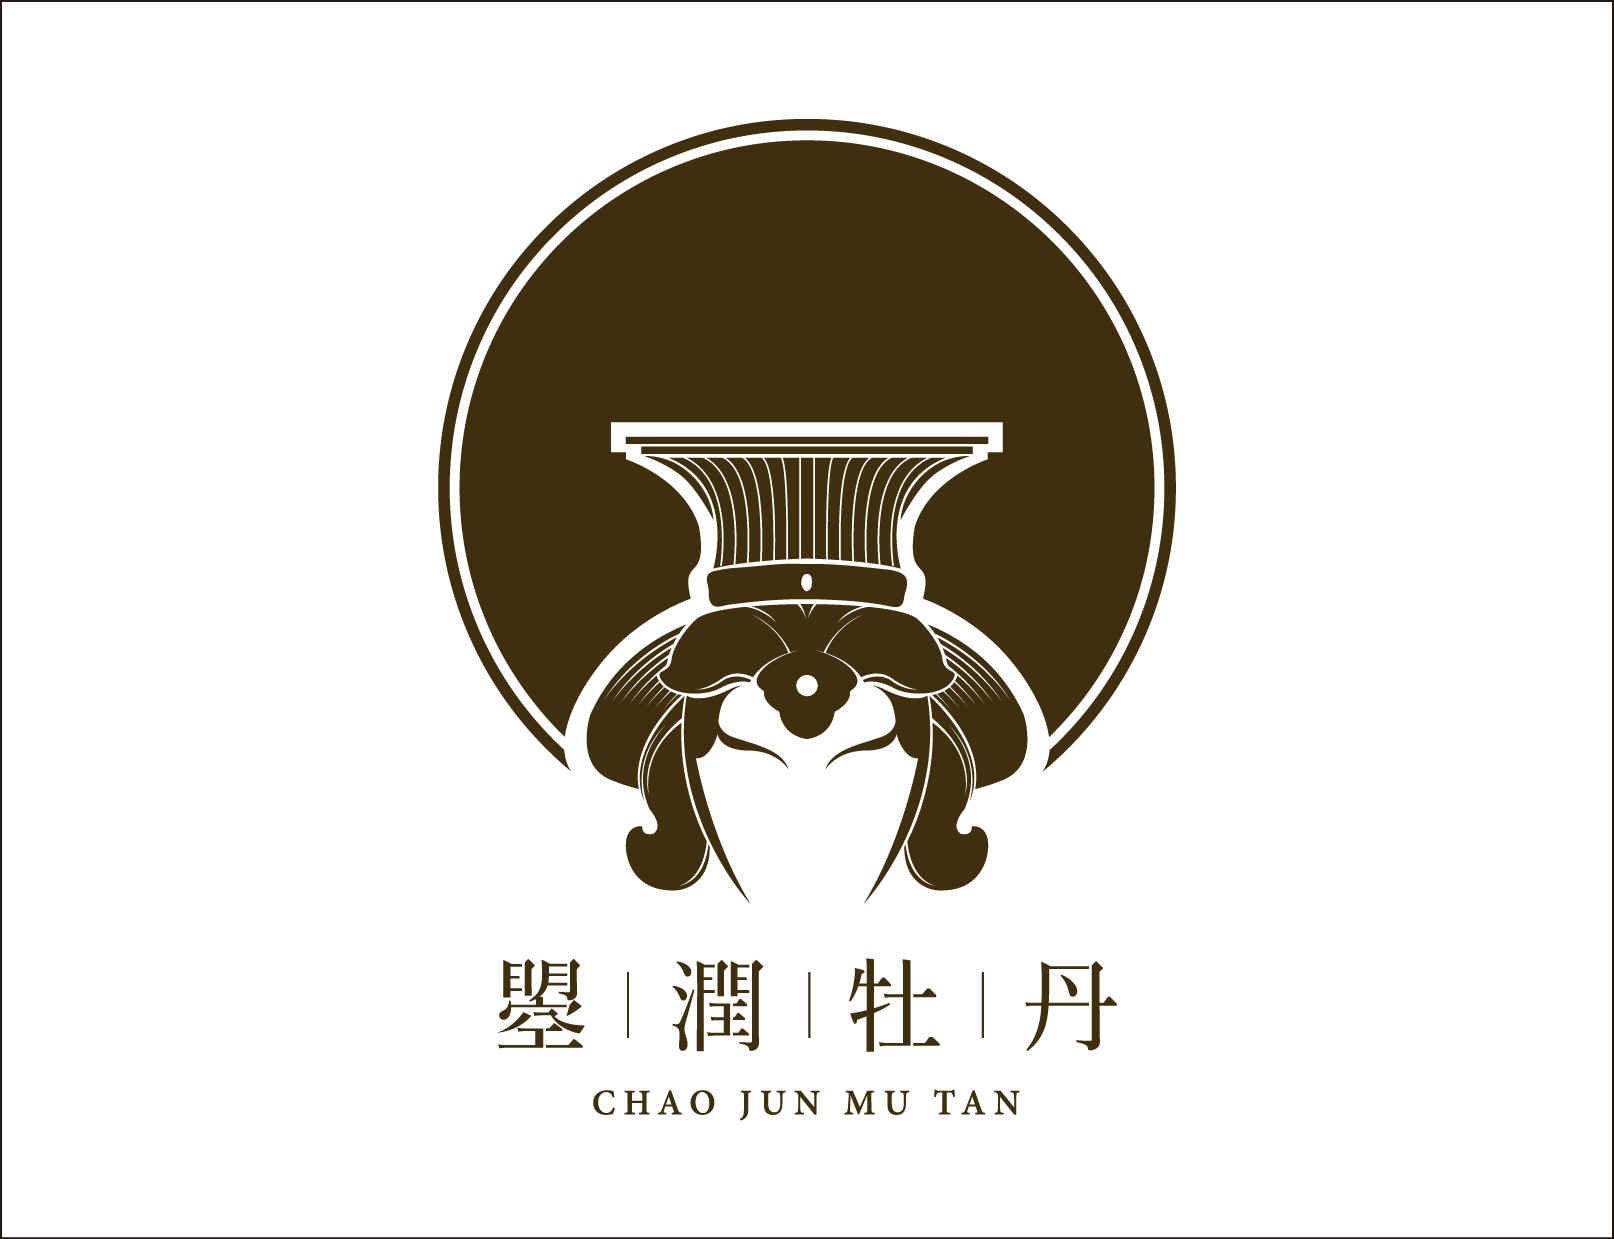 【曌润牡丹】古风logo,一场与洛阳花的灵感邂逅,新型保健品的品牌标识